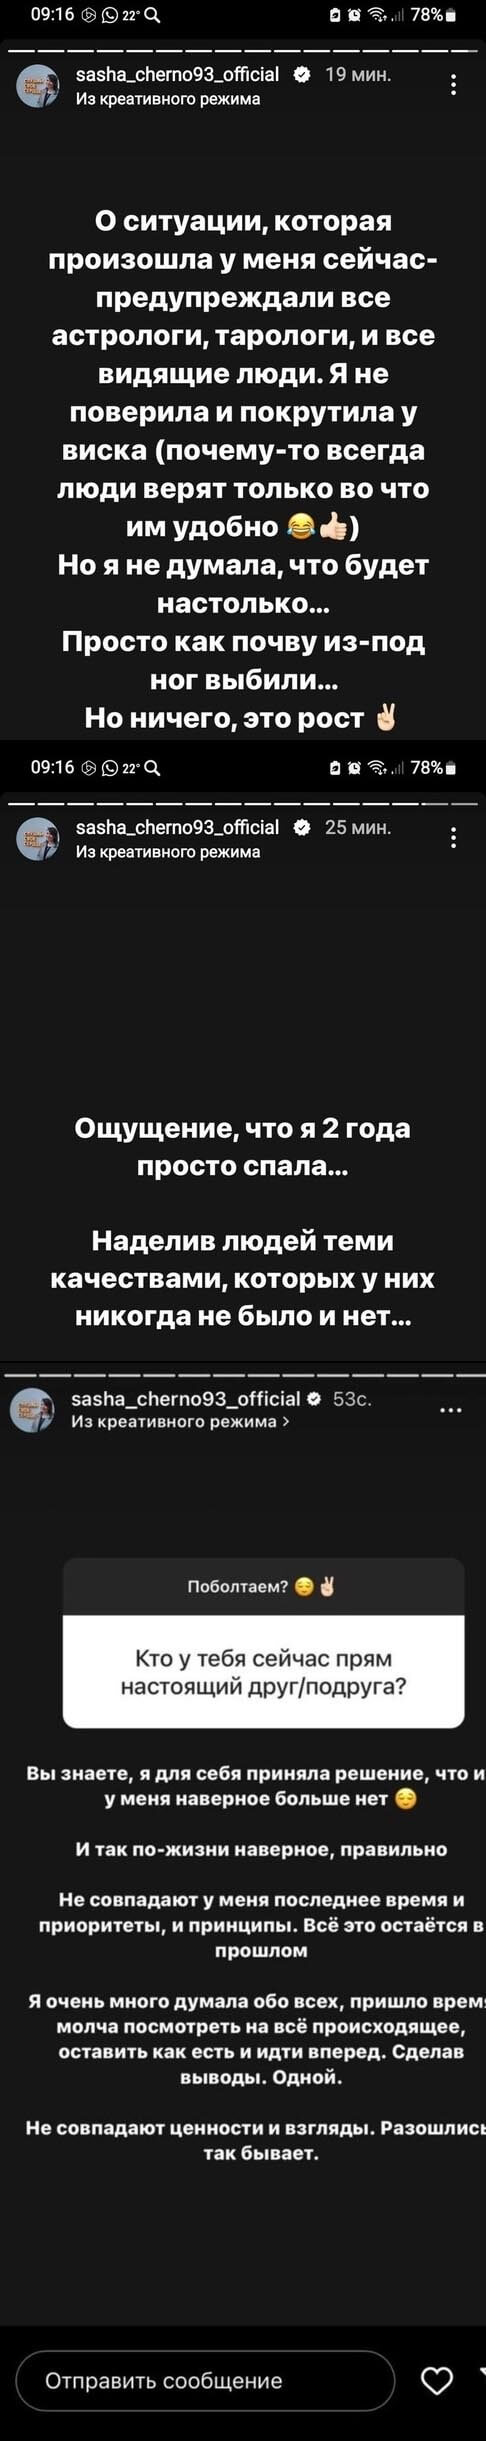 Пост Александры Черно вконтакте